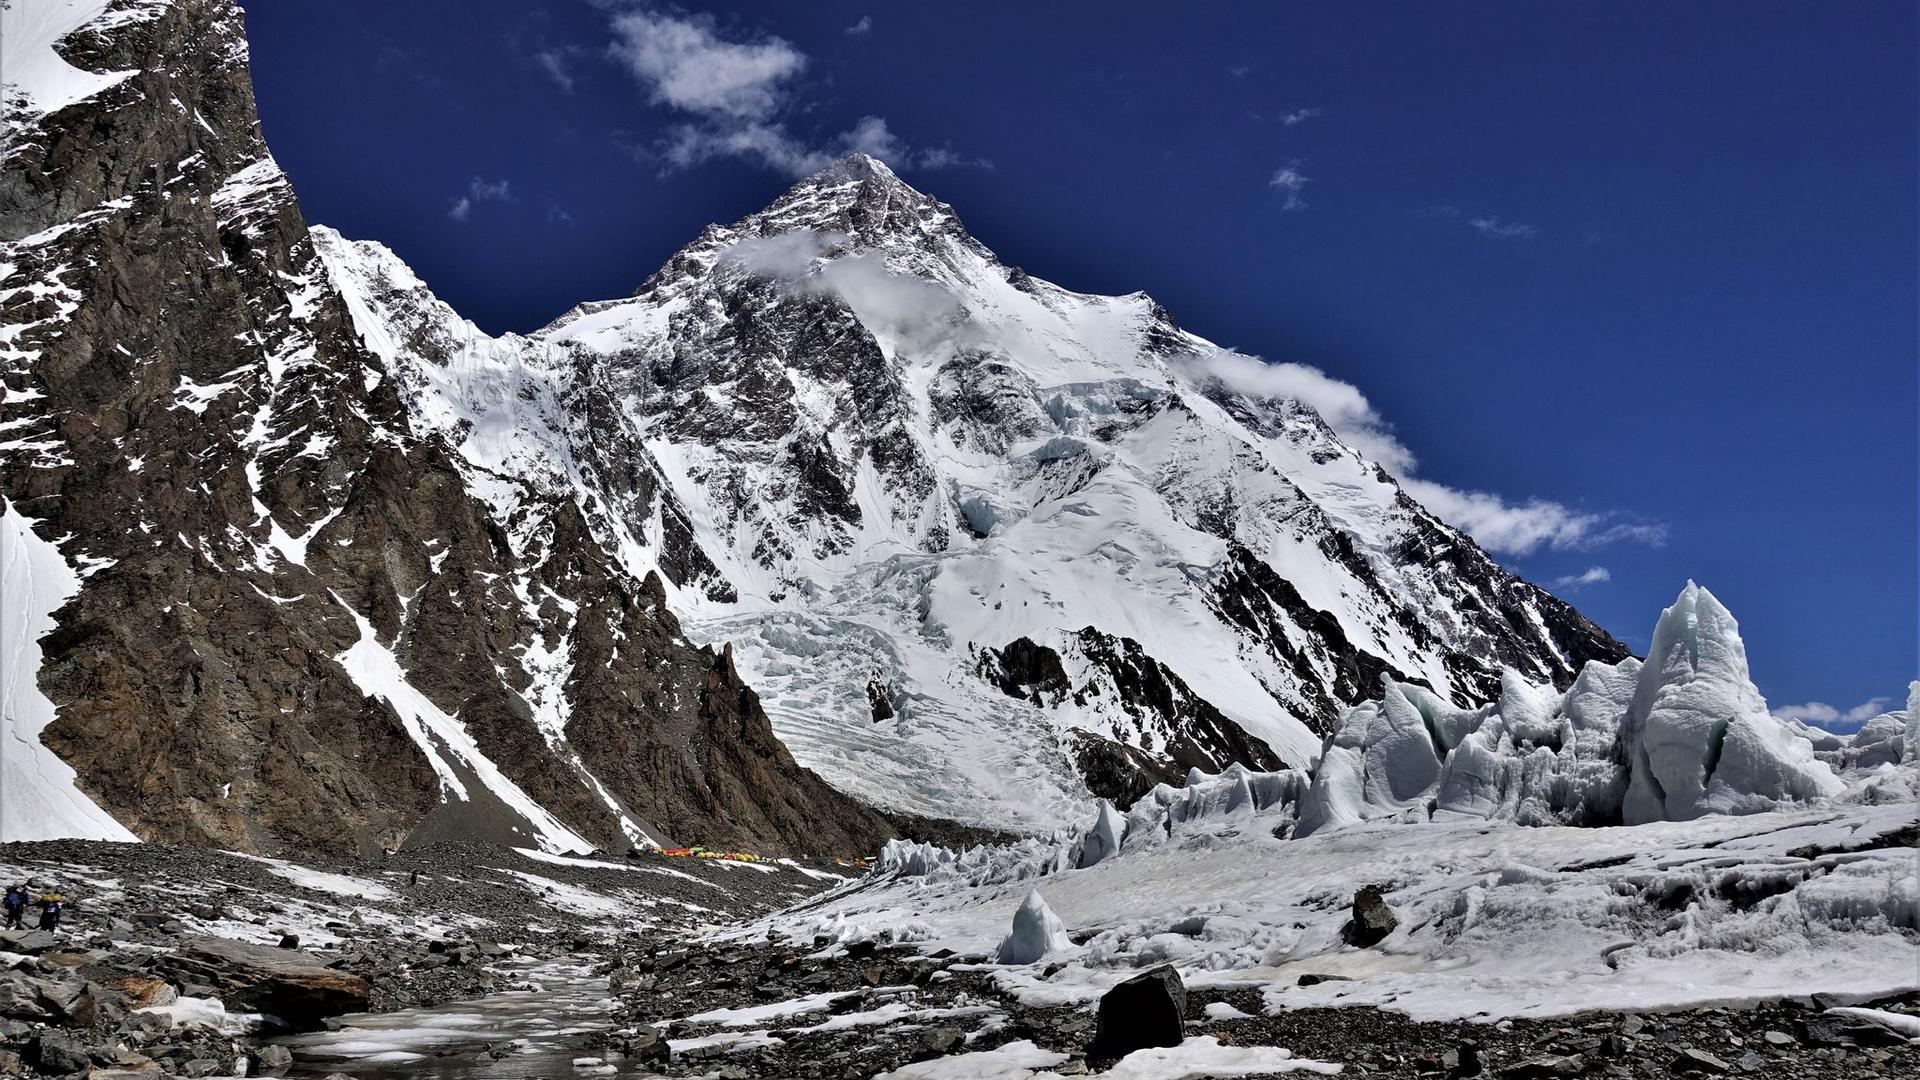 Der 8611 Meter hohe K2 in Pakistan ist der zweithöchste Berg der Welt und gilt als extrem schwierig.